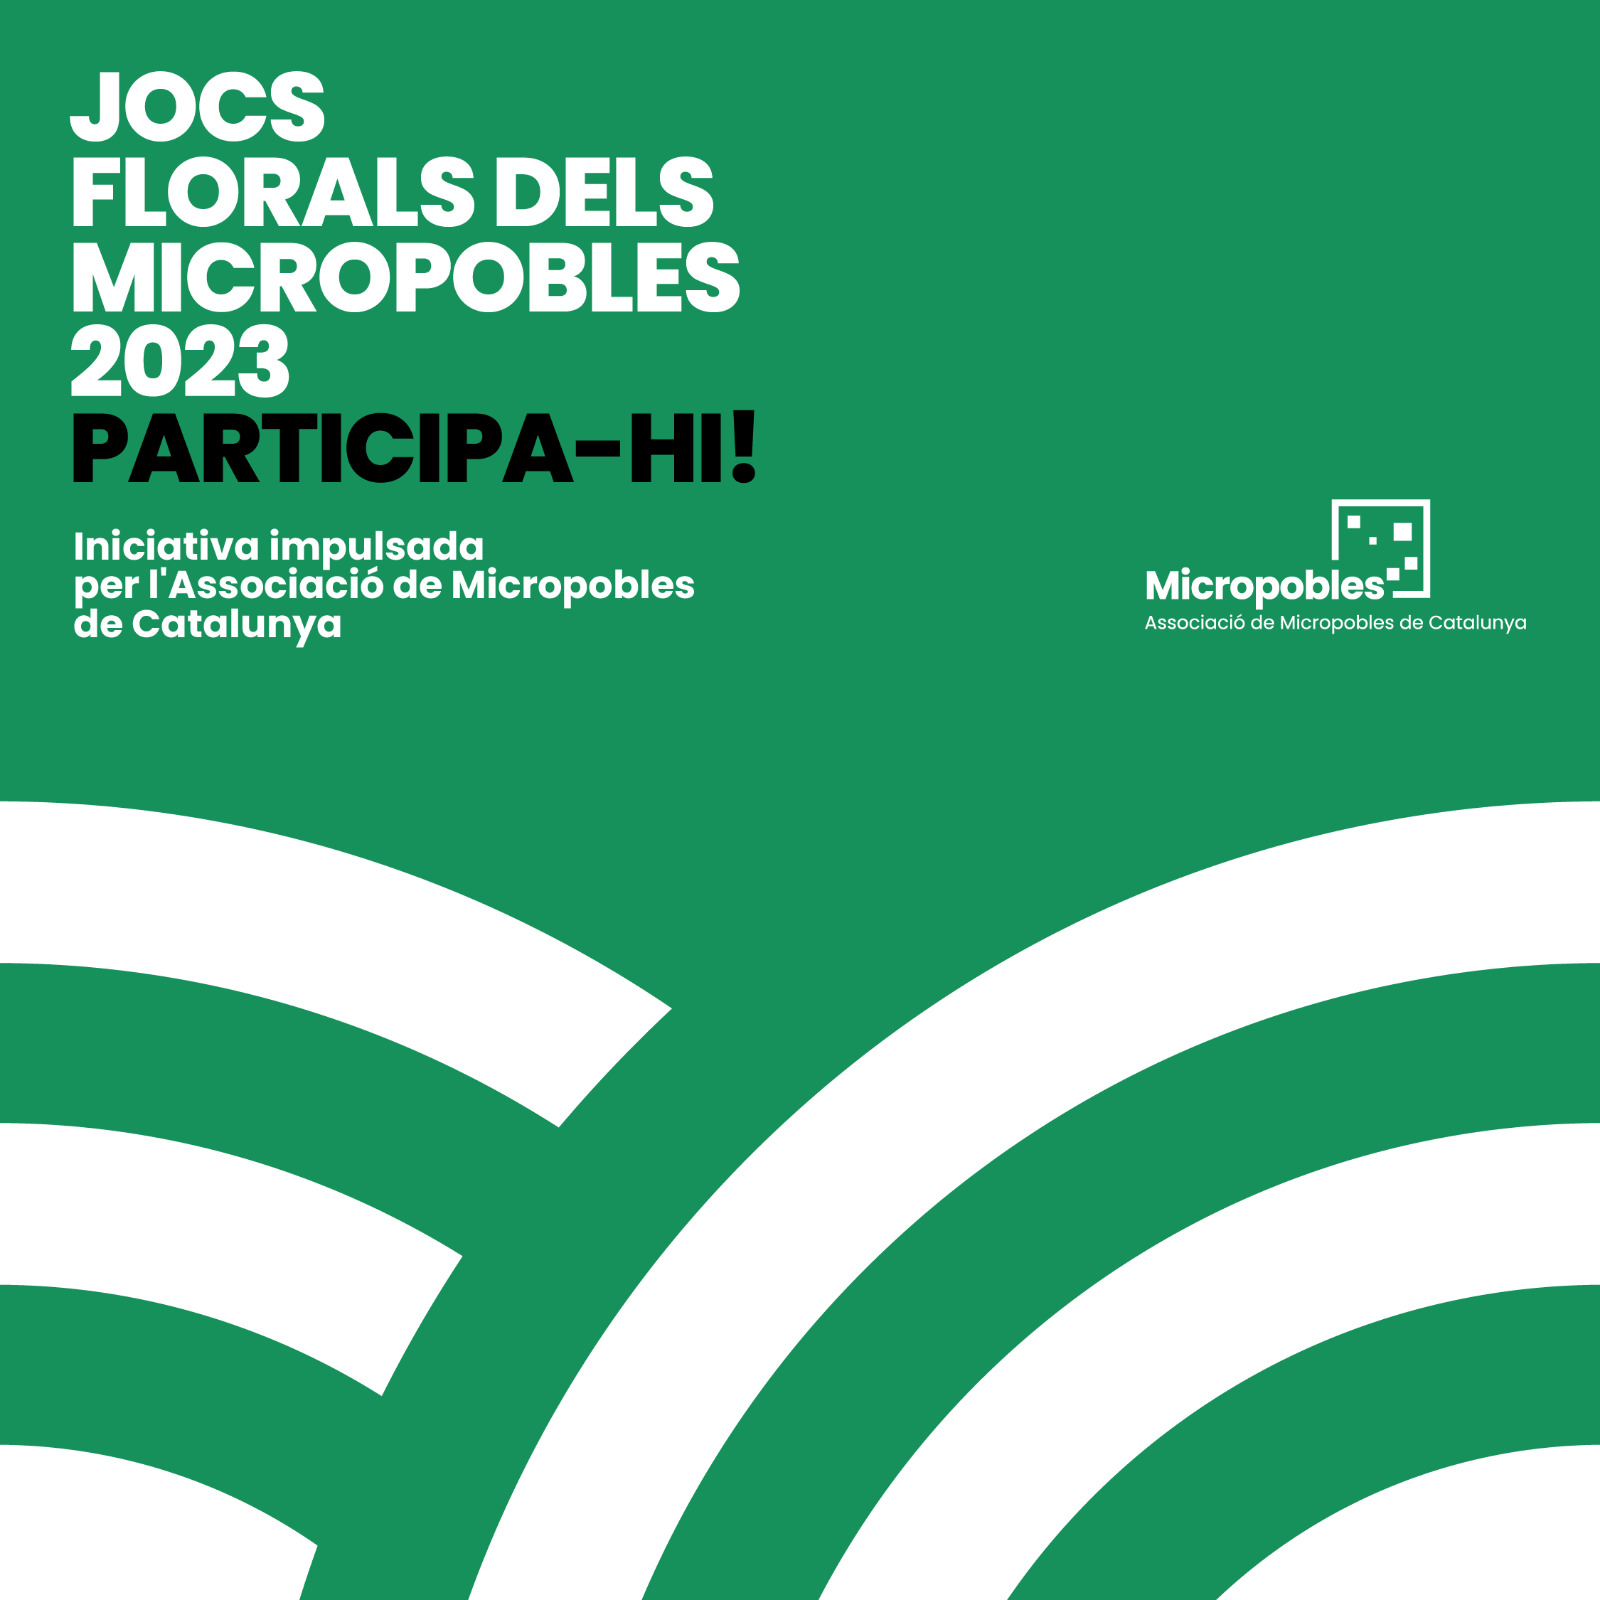 JOCS FLORALS DELS MICROPOBLES 2023